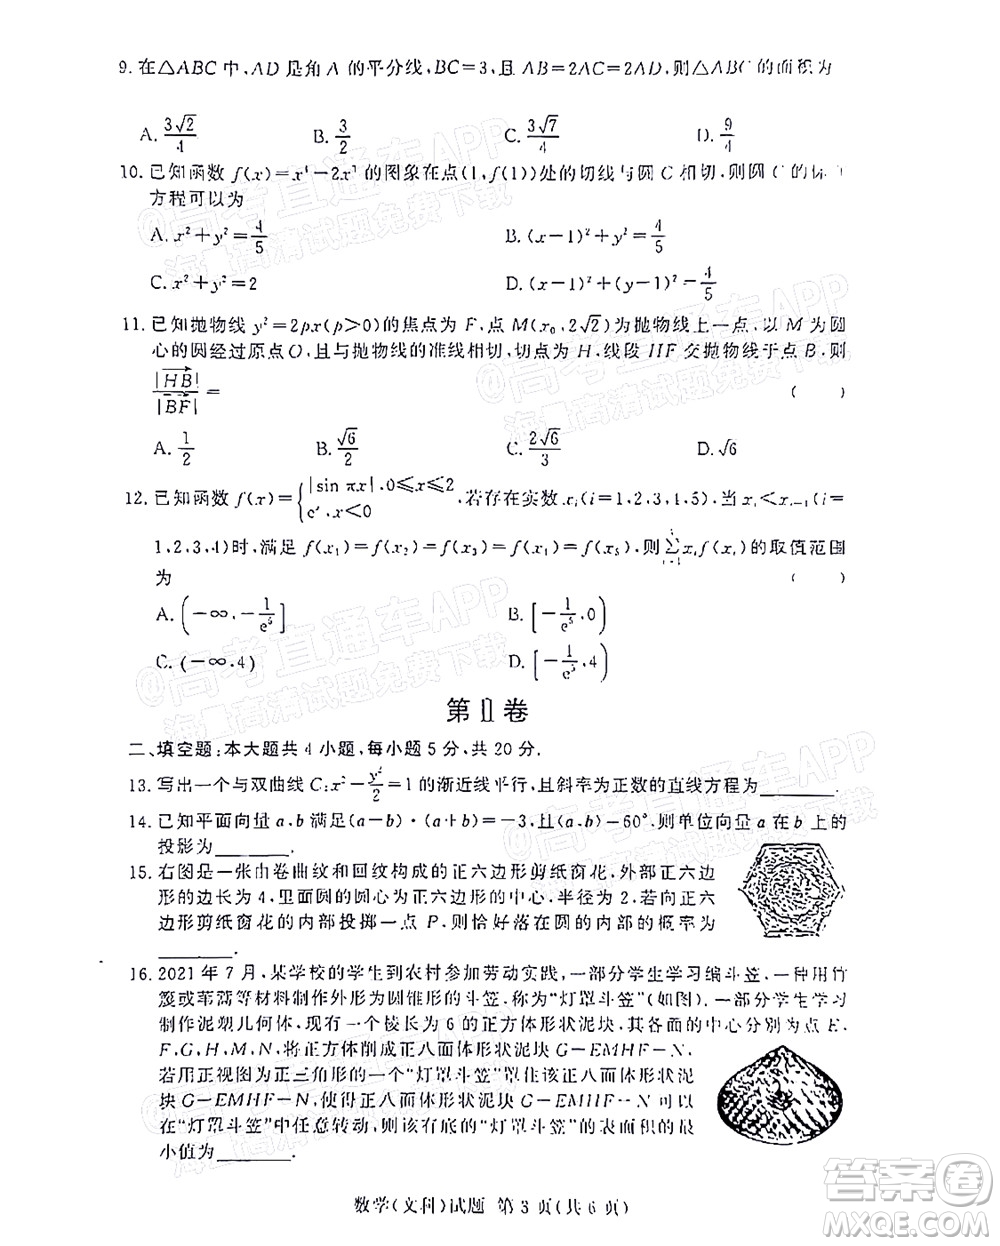 2021年11月湘豫名校联考高三文科数学试题及答案